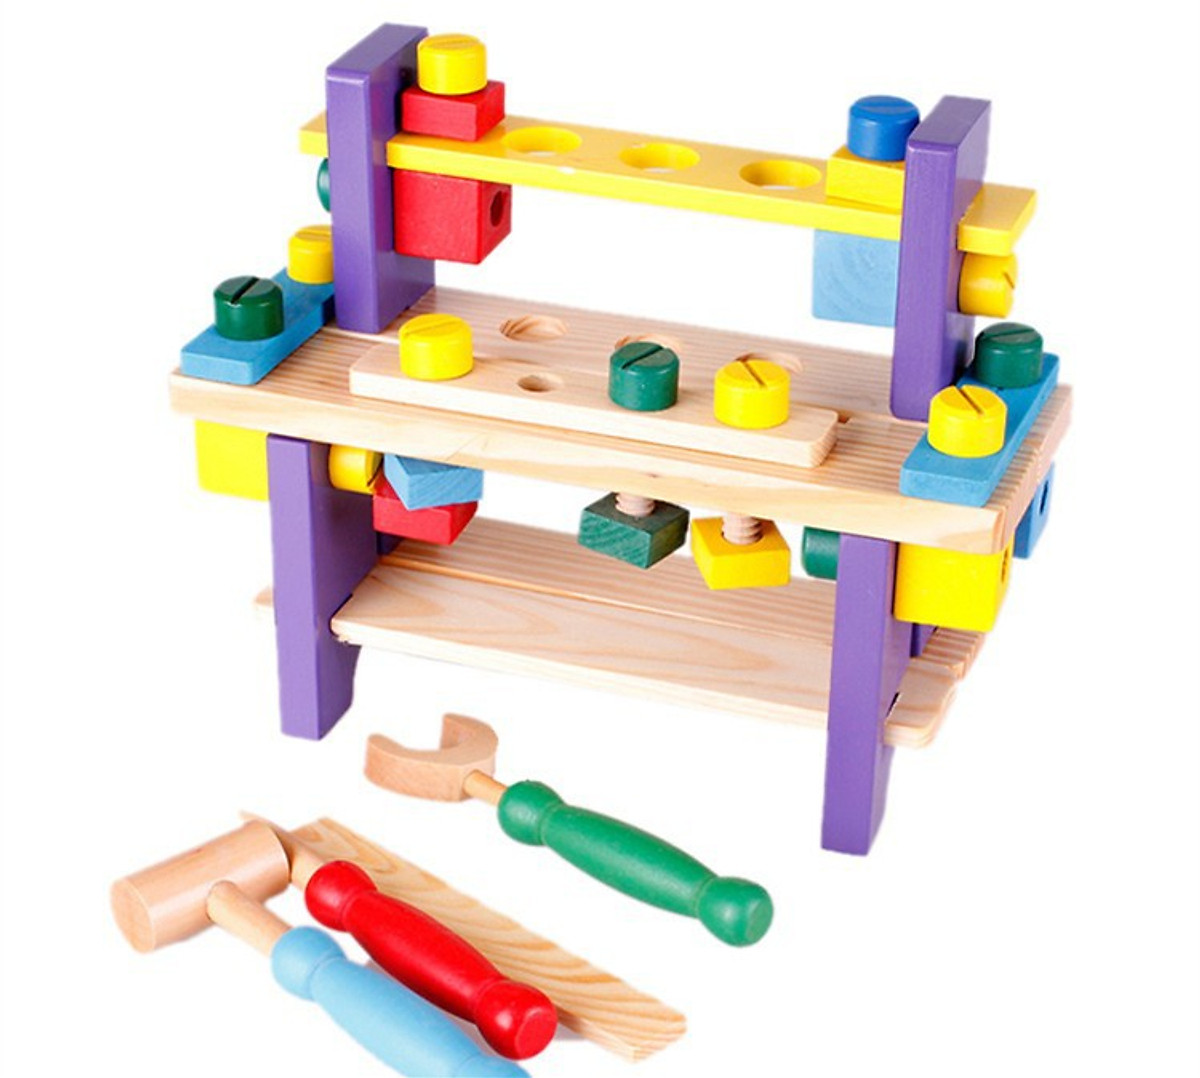 Bộ đồ chơi hộp đồ nghề sửa chữa kỹ thuật cho bé đồ chơi gỗ trí tuệ - An toàn cho bé